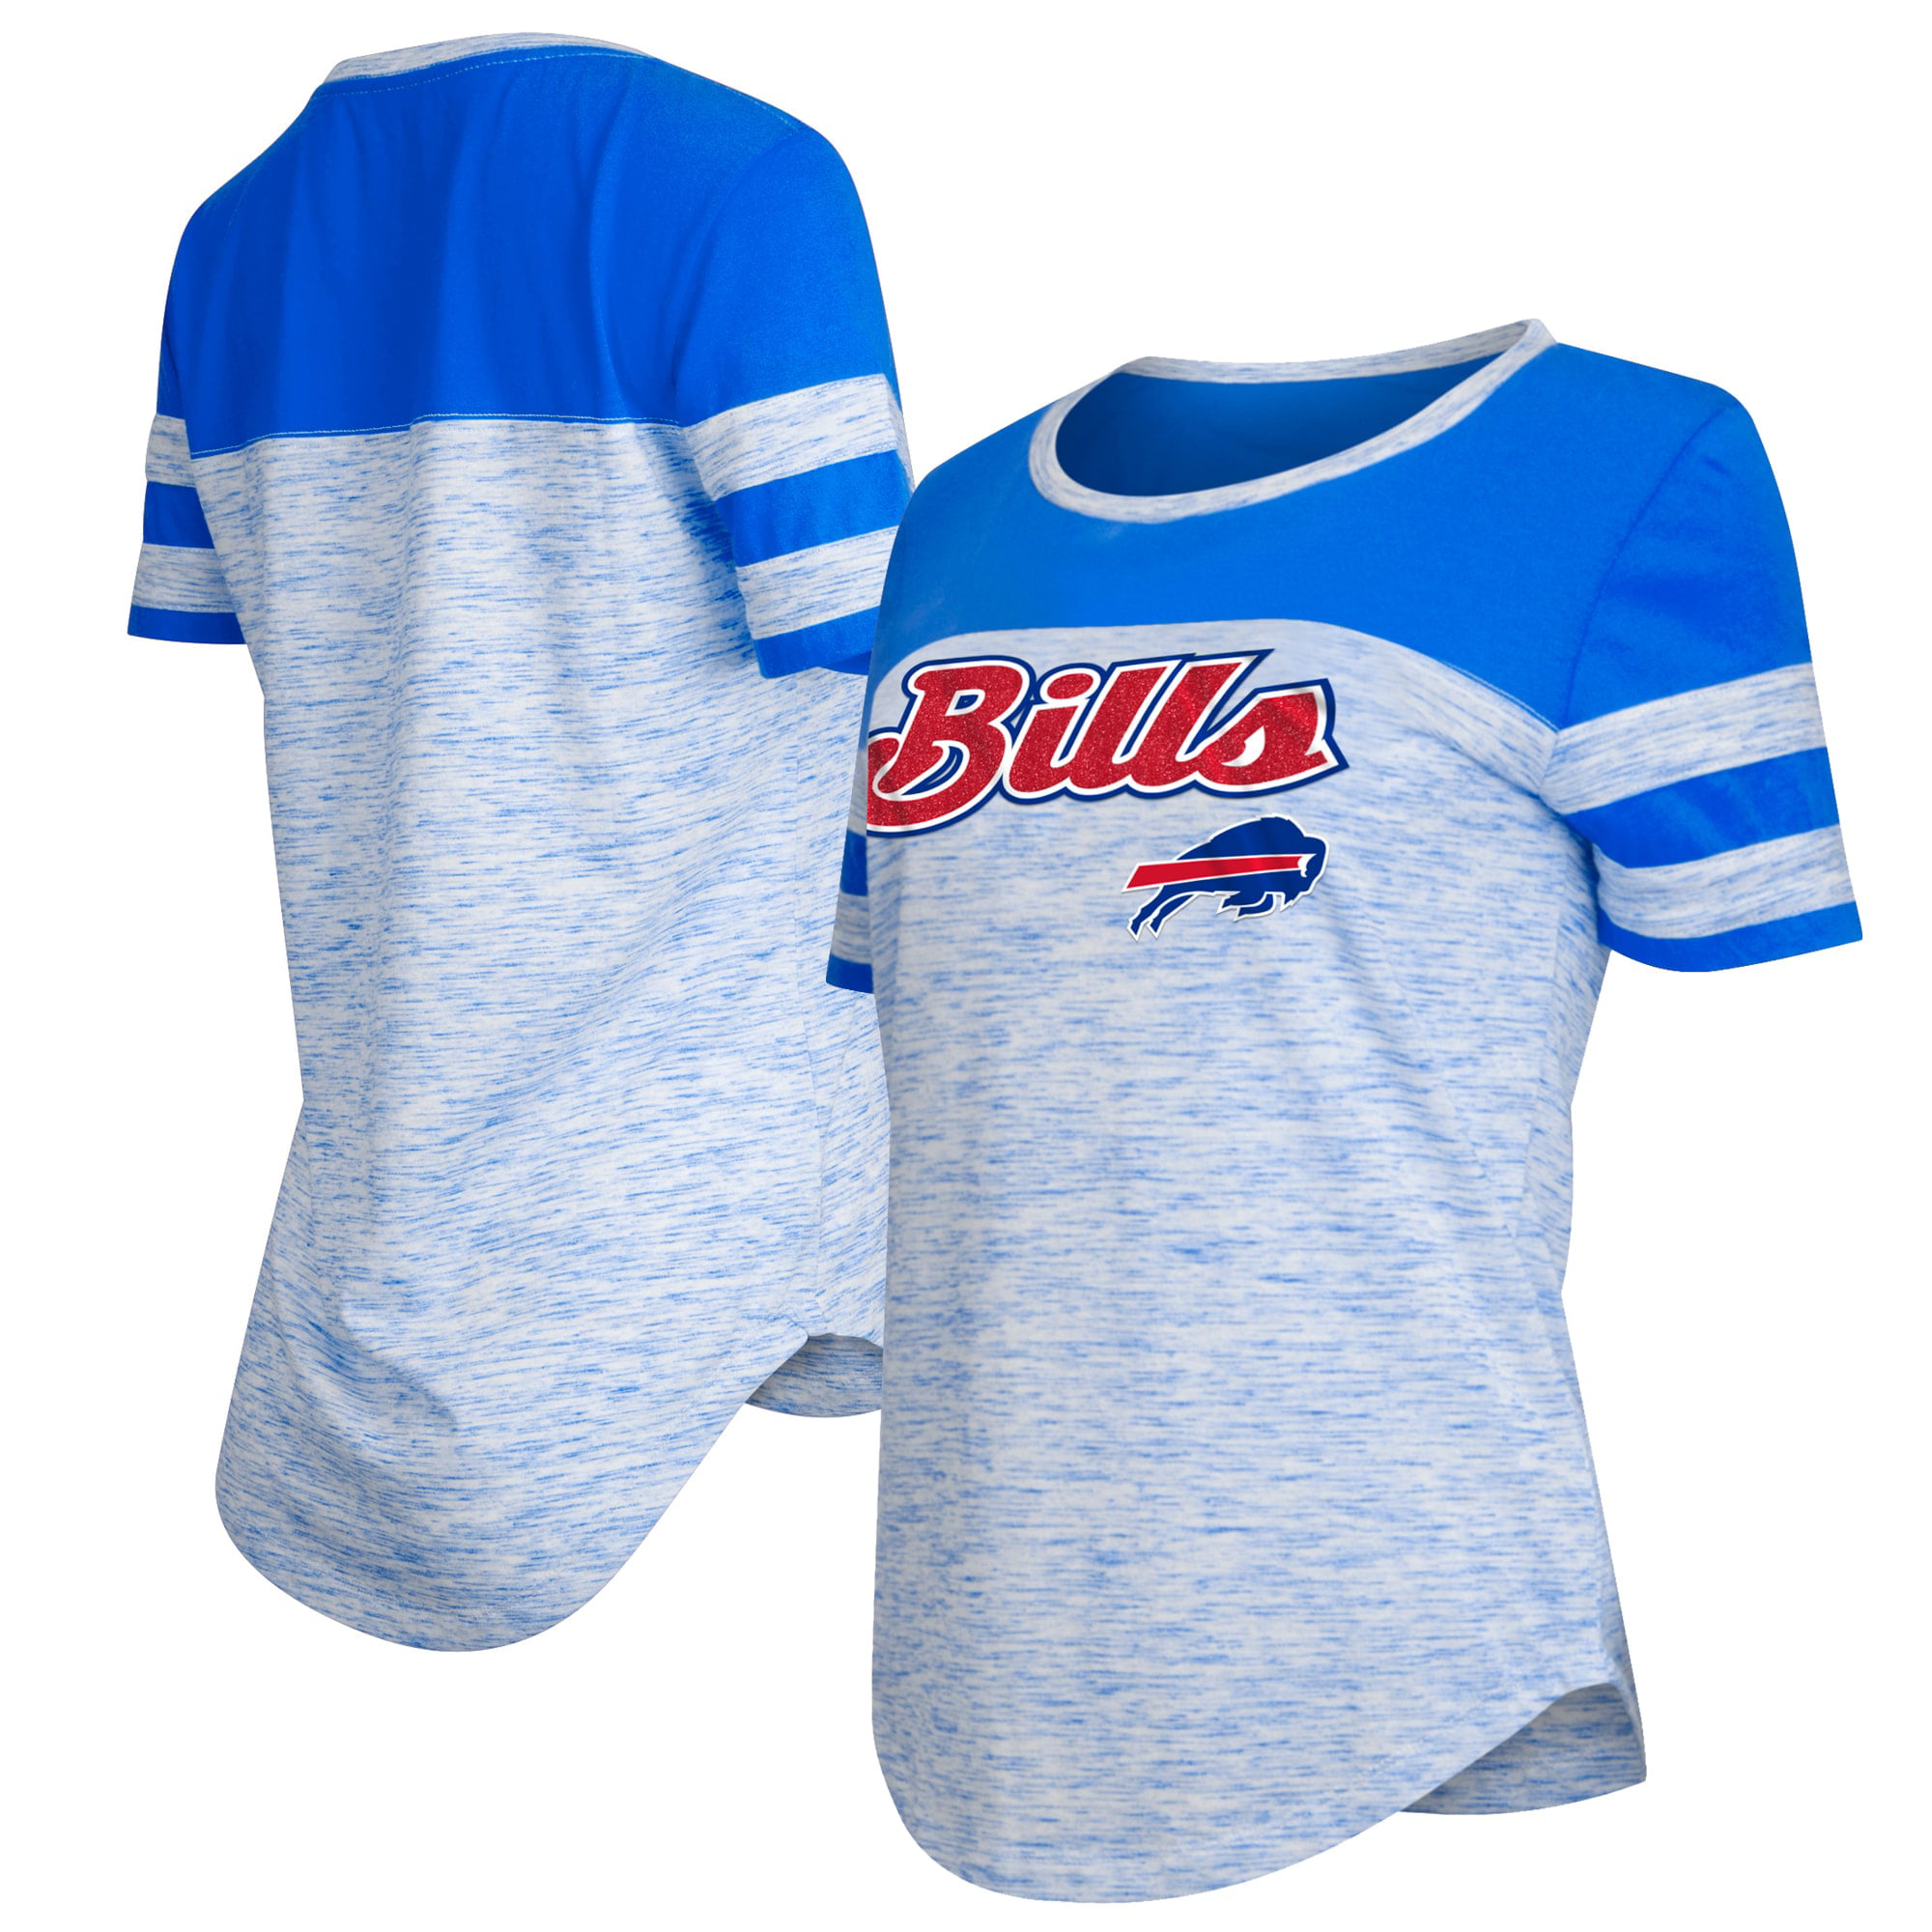 buffalo bills women's shirts